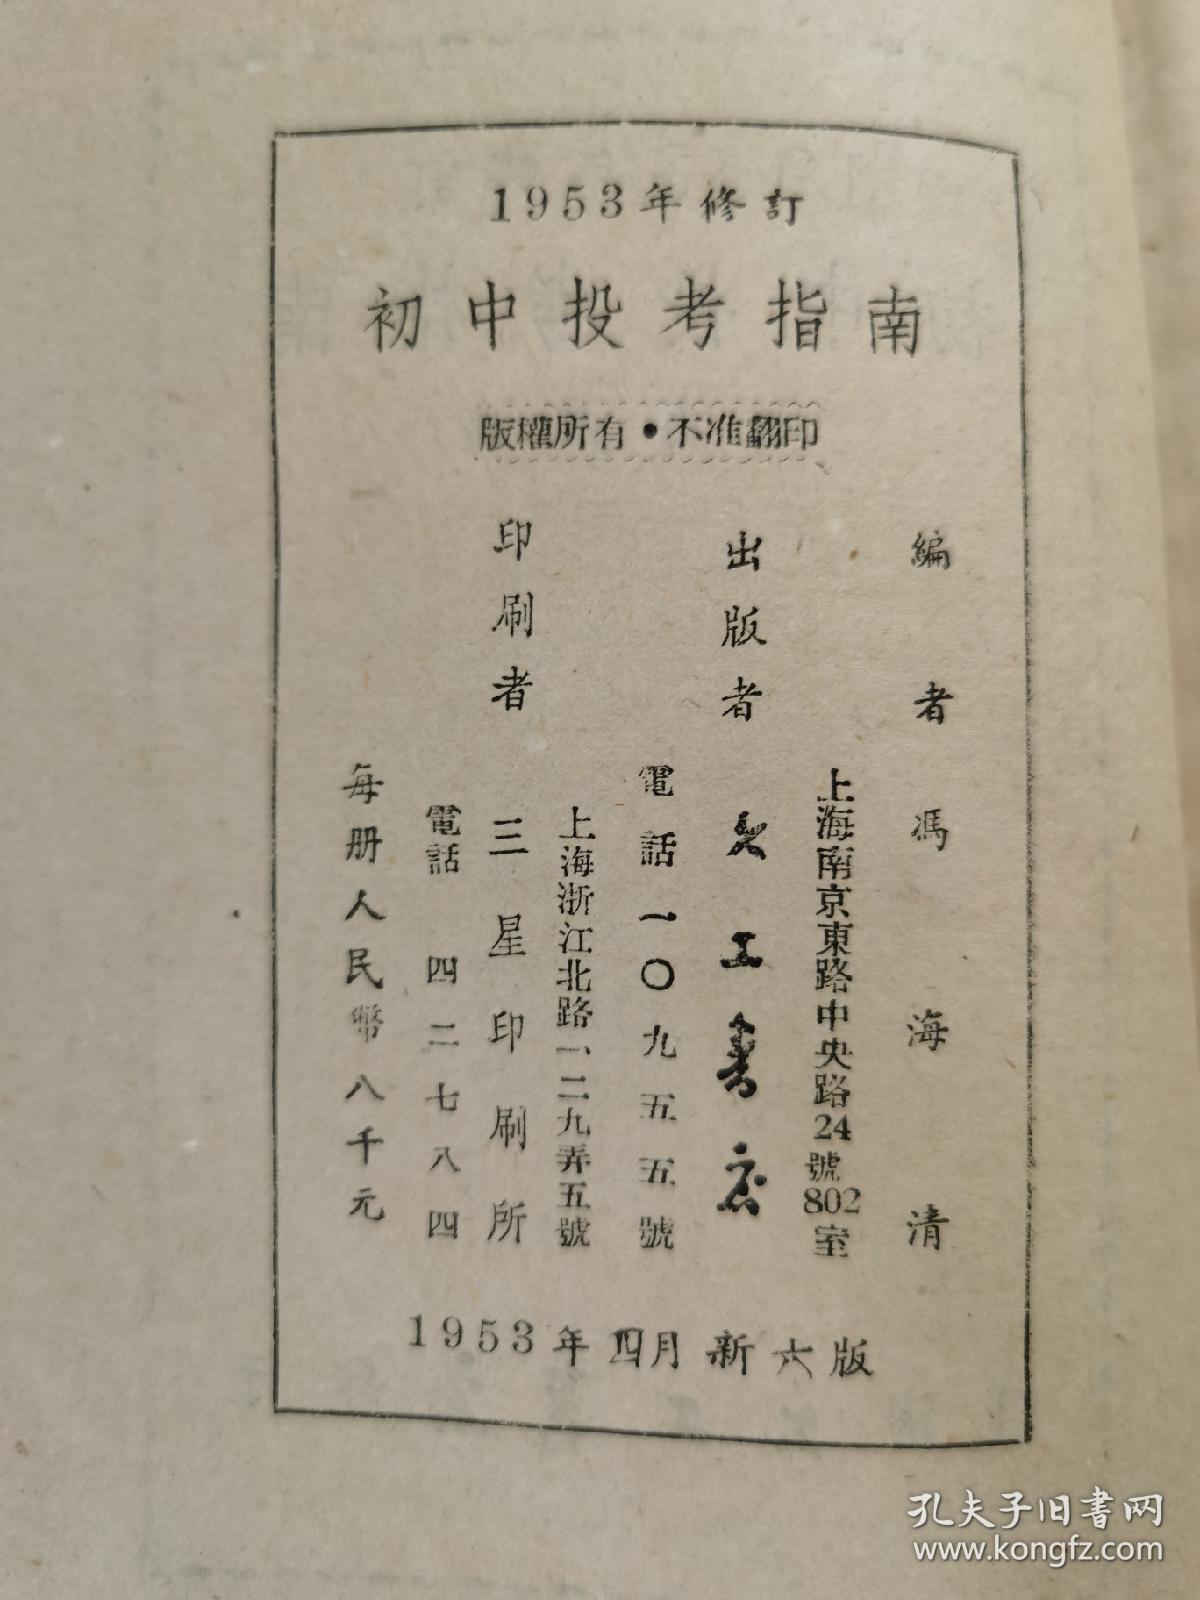 《初中投考指南》， 一九五三年修订 冯海清编。